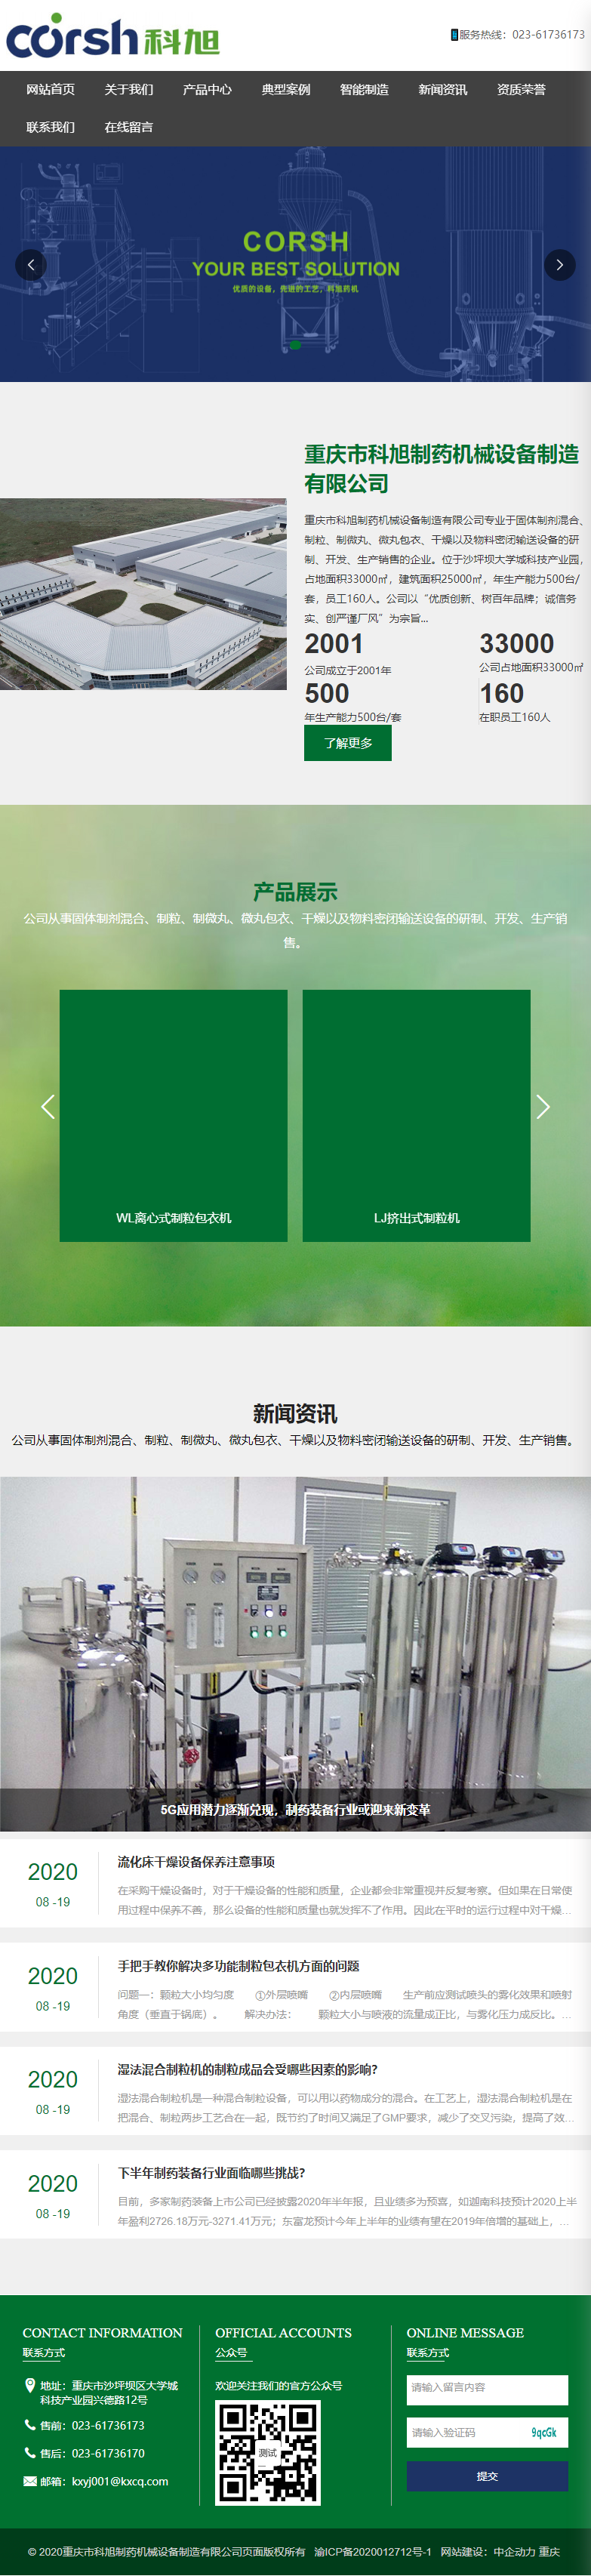 重庆市科旭制药机械设备制造有限公司网站案例